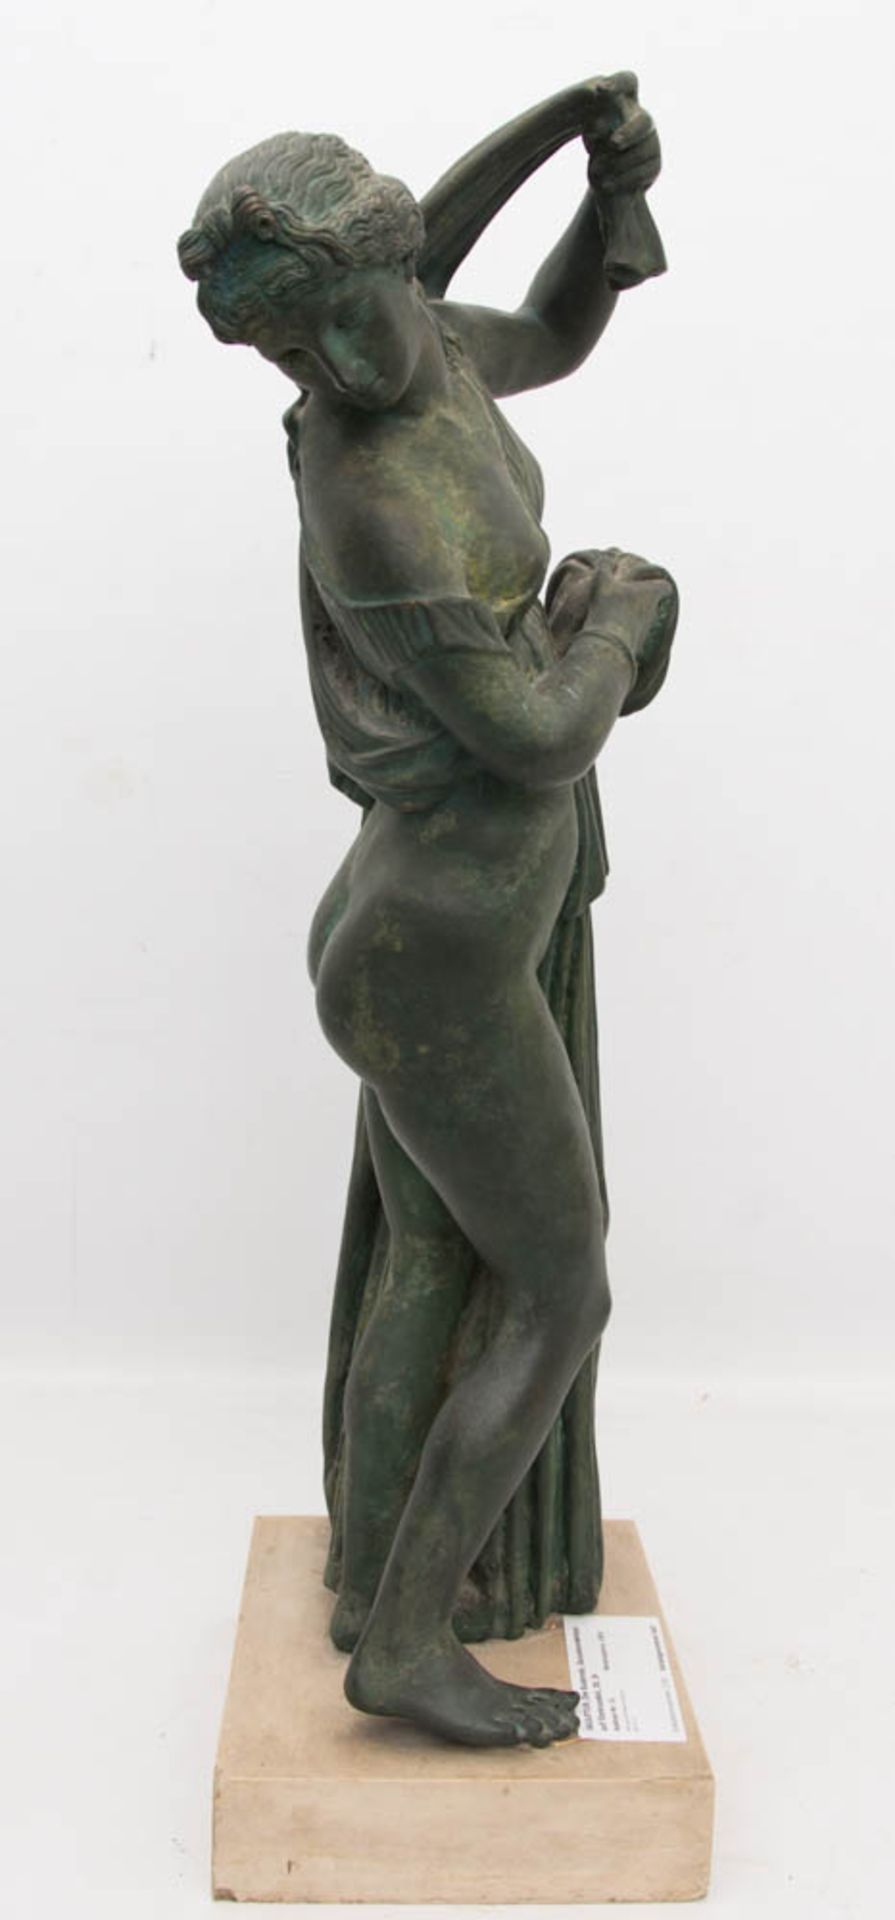 SKULPTUR, Die Badende, wohl bemalter Zinkguss auf Steinsockel, 20. Jh.Sehr gut erhaltene Skulptur.68 - Bild 2 aus 6